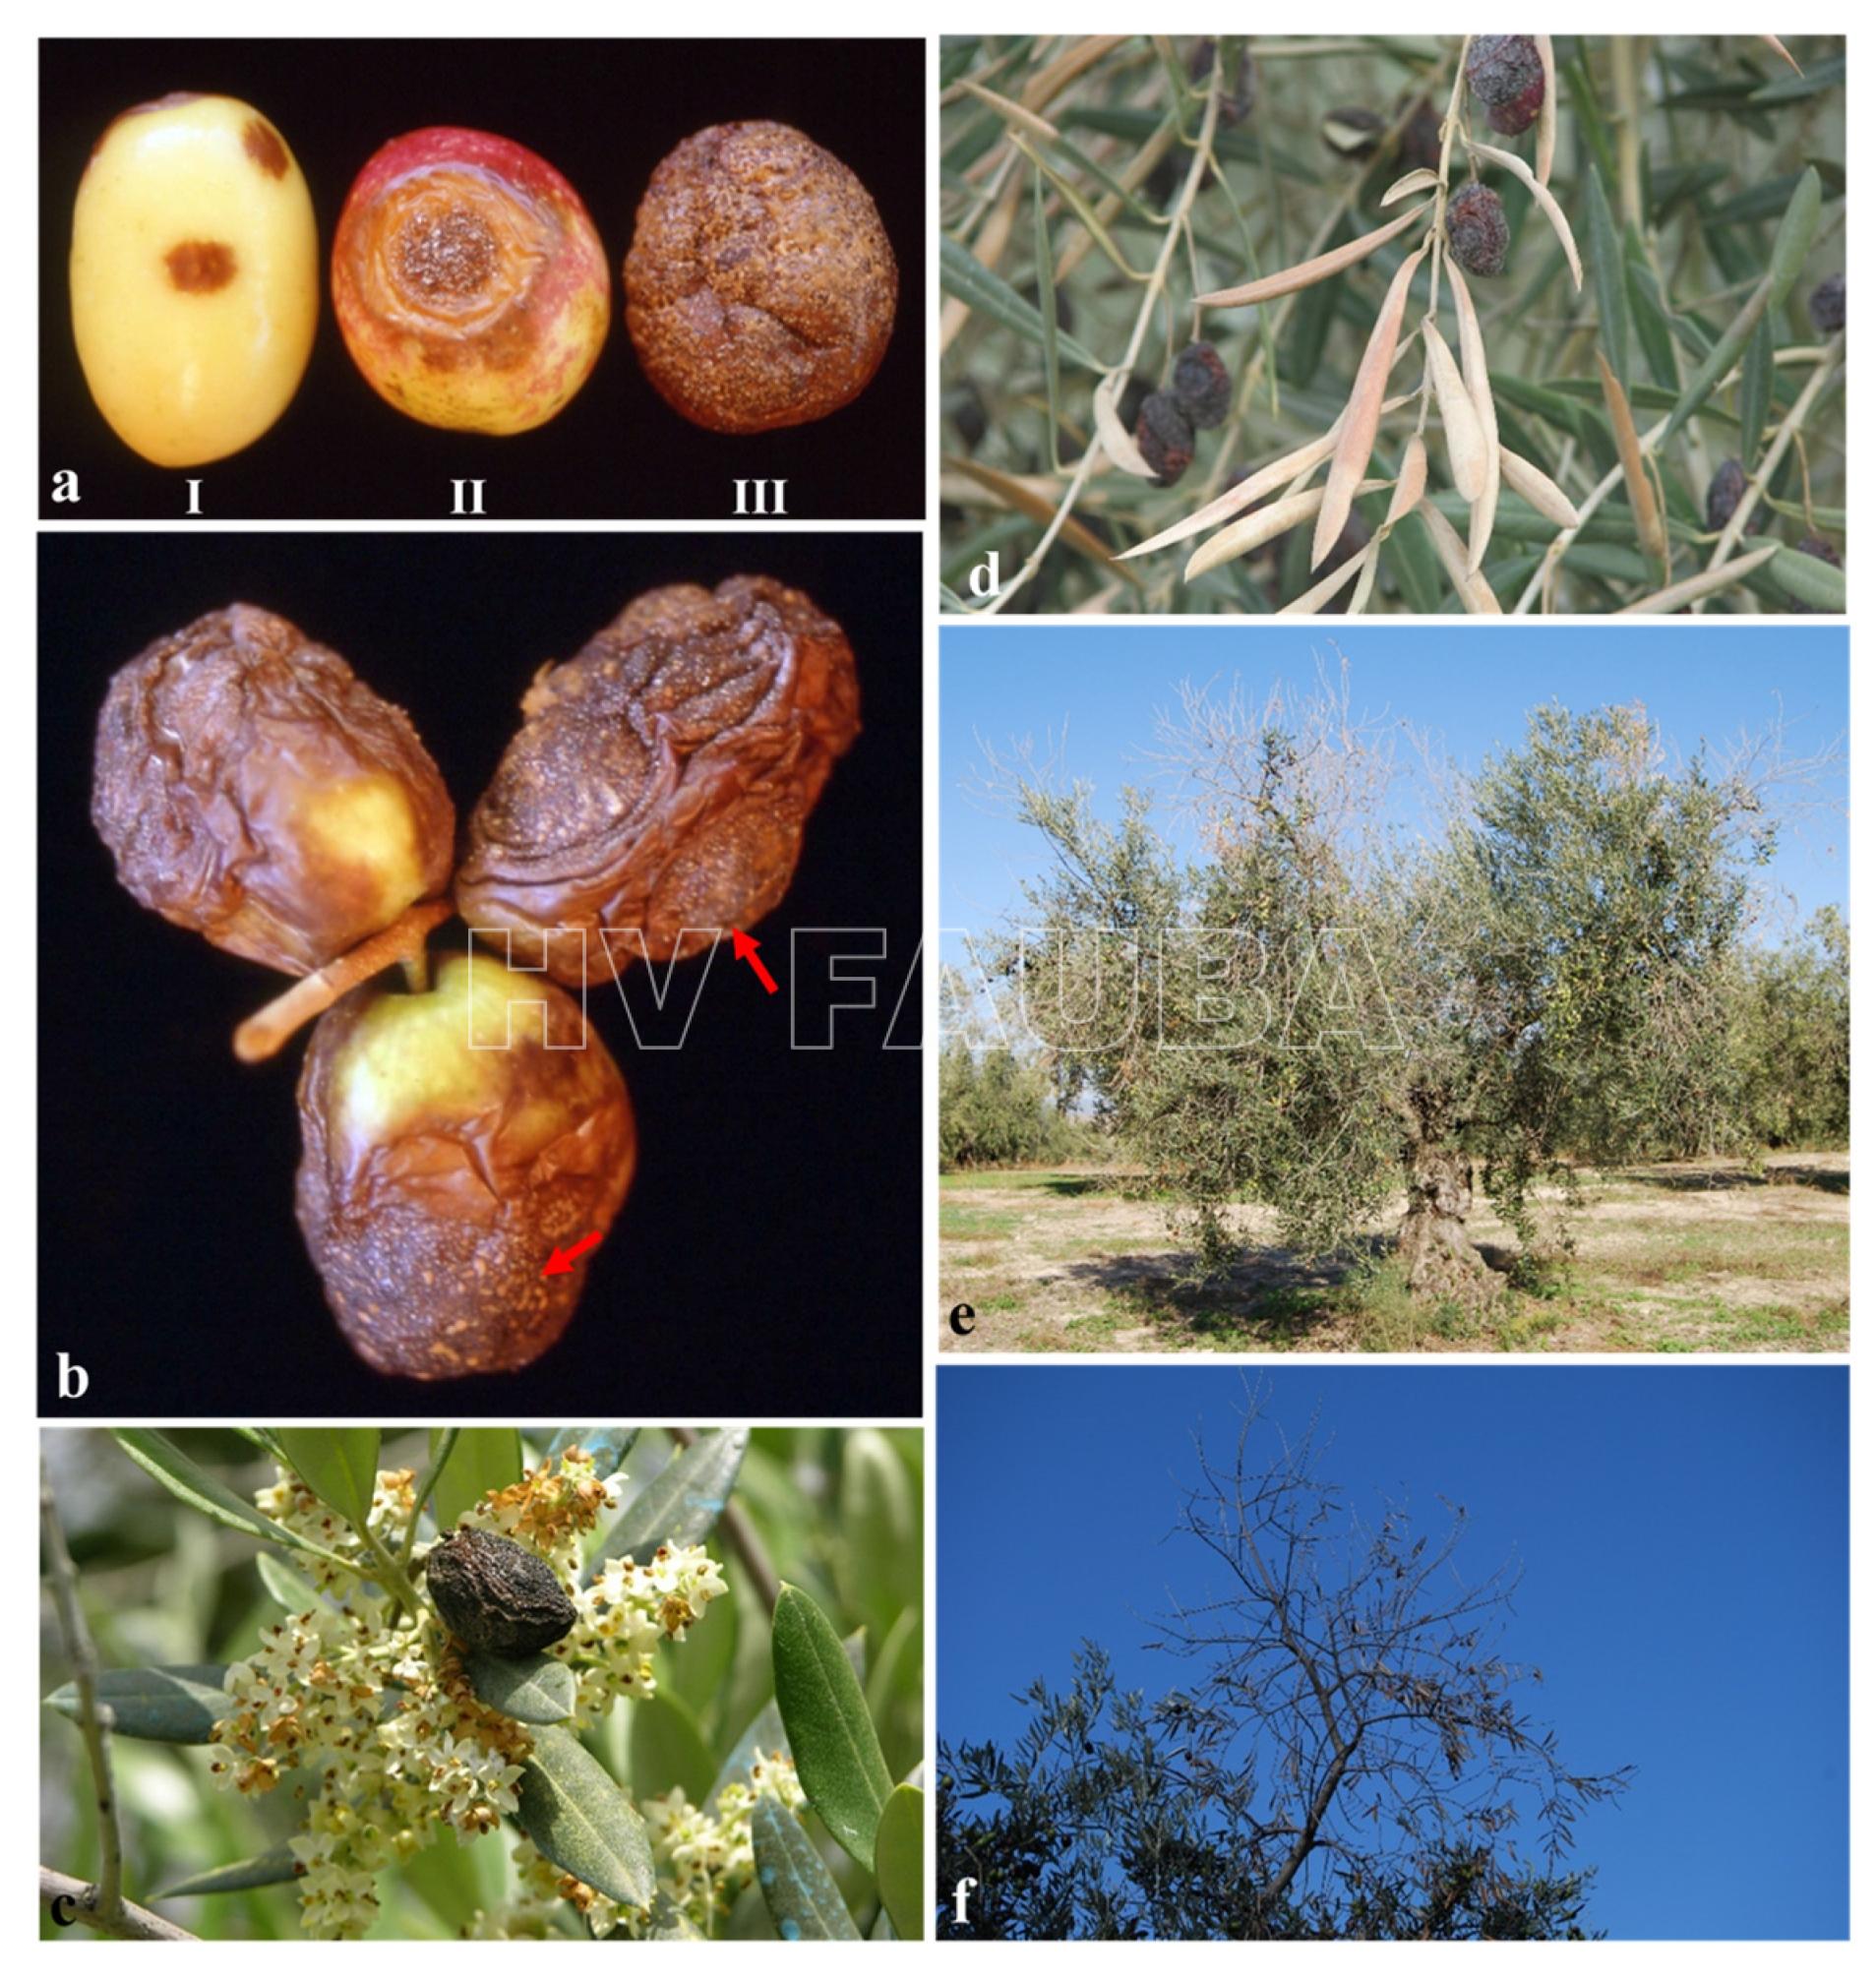 Síntomas típicos de la antracnosis del olivo. (a) Progresión de la enfermedad en frutos de olivo infectados naturalmente (I: síntomas incipientes; II: lesiones deprimidas, redondas y de color marrón ocre; III: frutos podridos con masas anaranjadas de conidios producidas por Colletotrichum spp.); (b) detalle de masas de conidios anaranjadas (flechas rojas) en frutos de olivo infectados; (c, d) frutos momificados que permanecen en la copa del árbol causando el tizón de las flores y las hojas; (e, f) muerte regresiva de brotes y ramas causada por Colletotrichum spp. en olivos. Autor: Moral et al., 2021.